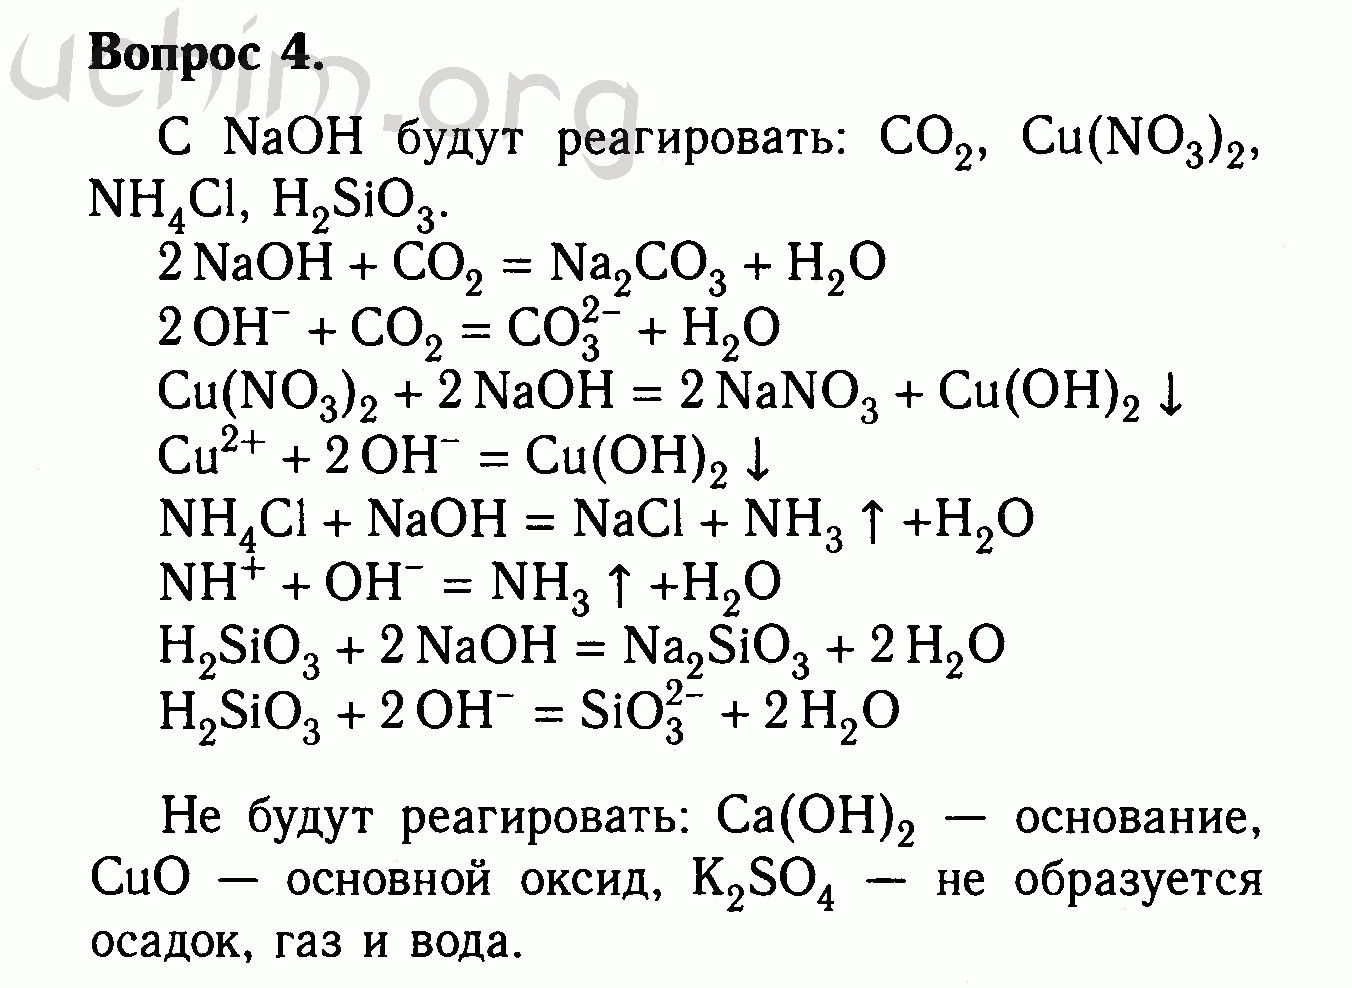 Сера плюс гидроксид натрия. Оксид меди + со4 Купрума. Оксид меди 2 плюс гидроксид натрия. С гидроксидом натрия реагирует оксид меди 2. Магний плюс фосфат меди 2.